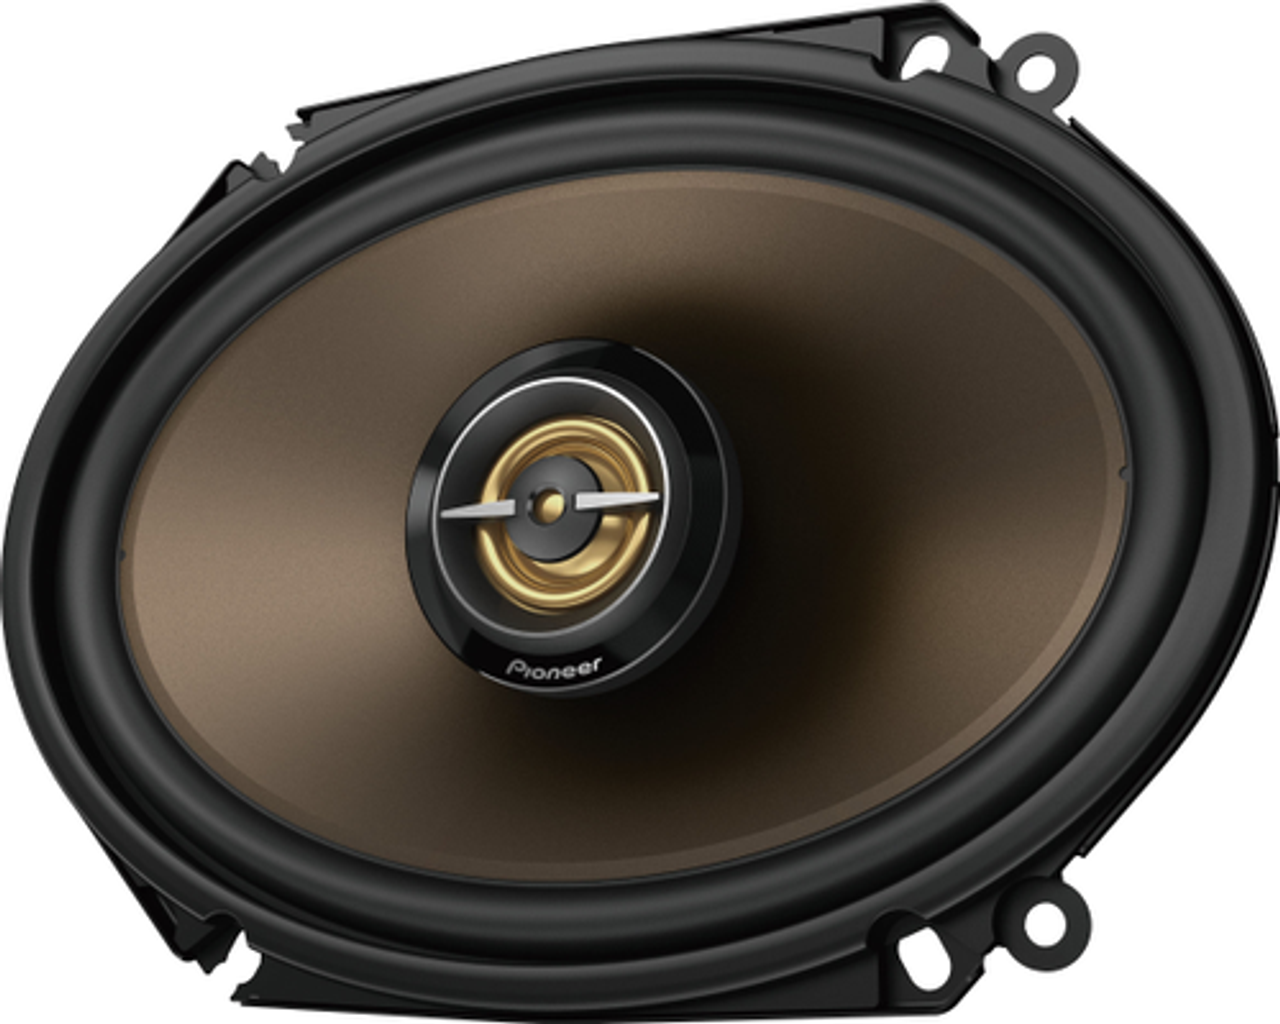 Pioneer - 6" x 8" 2-way Car Speakers Aramid Fiber-reinforced IMPP cone (Pair) - Black